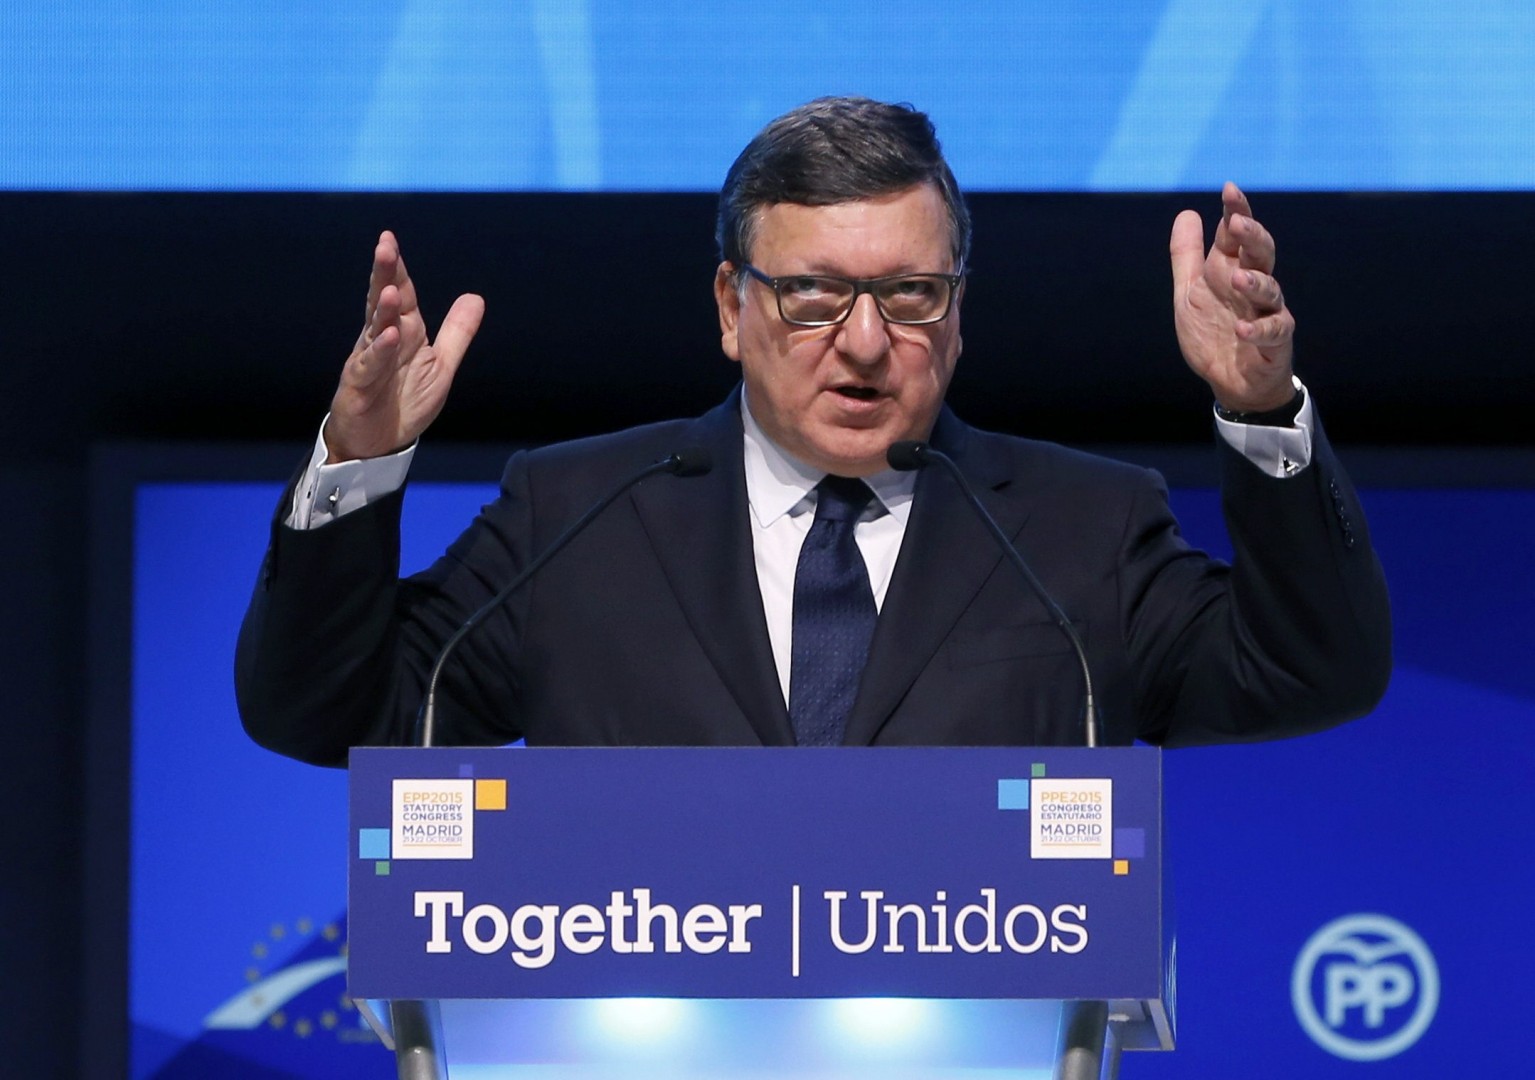 V Dresdnu je tudi nekdanji predsednik Evropske komisije Jose Manuel Barroso, ki sodeluje v lobiranju glede novega generalnega sekretarka OZN (foto: epa).